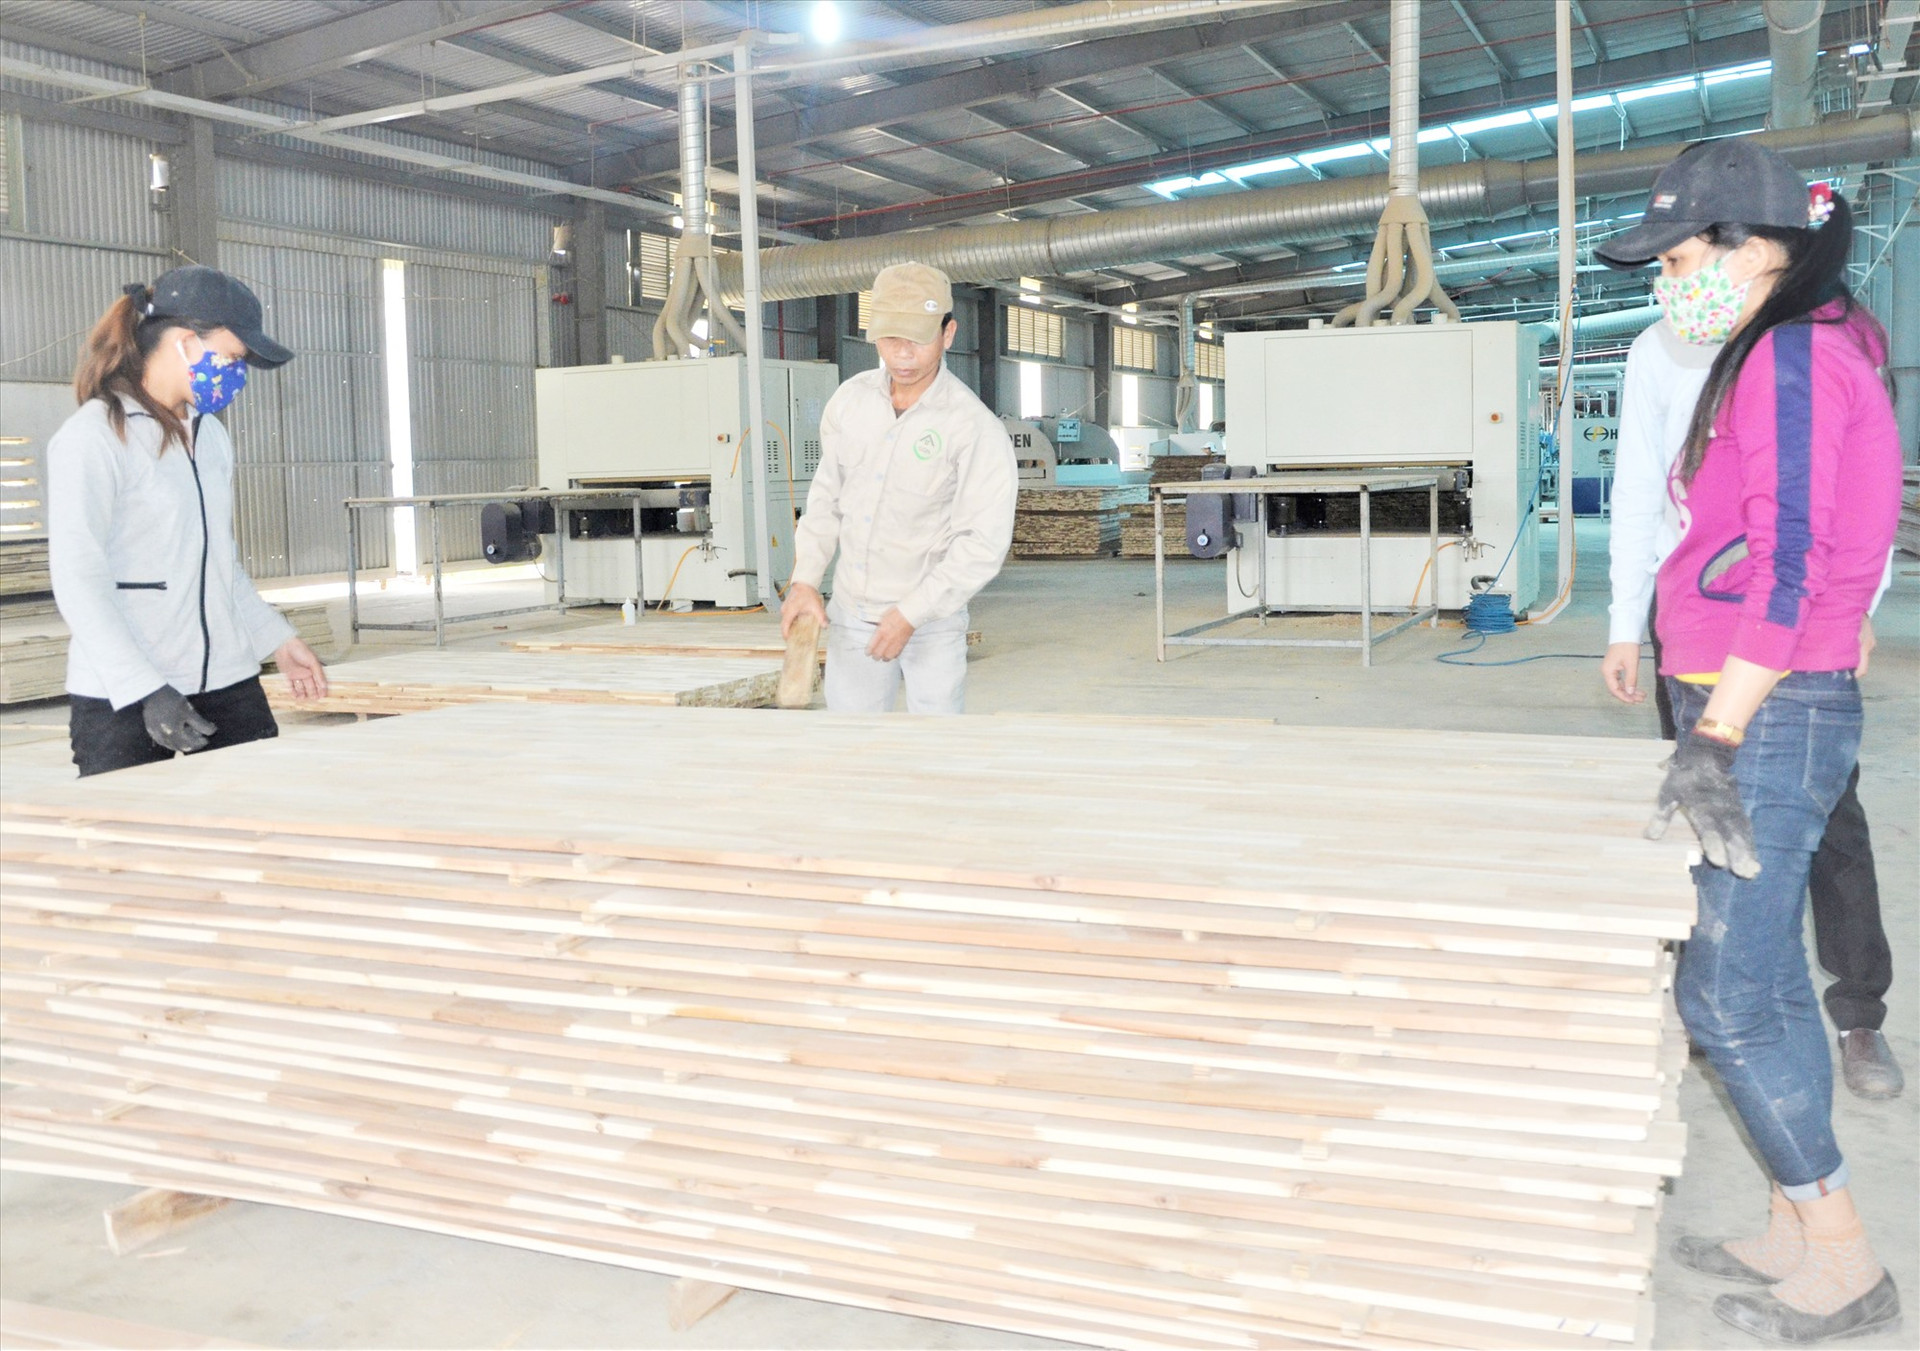 Ngành công nghiệp chế biến gỗ, xuất khẩu gỗ và các sản phẩm từ gỗ đem lại giá trị kinh tế cao. TRONG ẢNH: Xưởng sản xuất gỗ của Công ty CP Gỗ công nghiệp Quảng Nam, tại xã Quế Thọ (Hiệp Đức). Ảnh: H.P